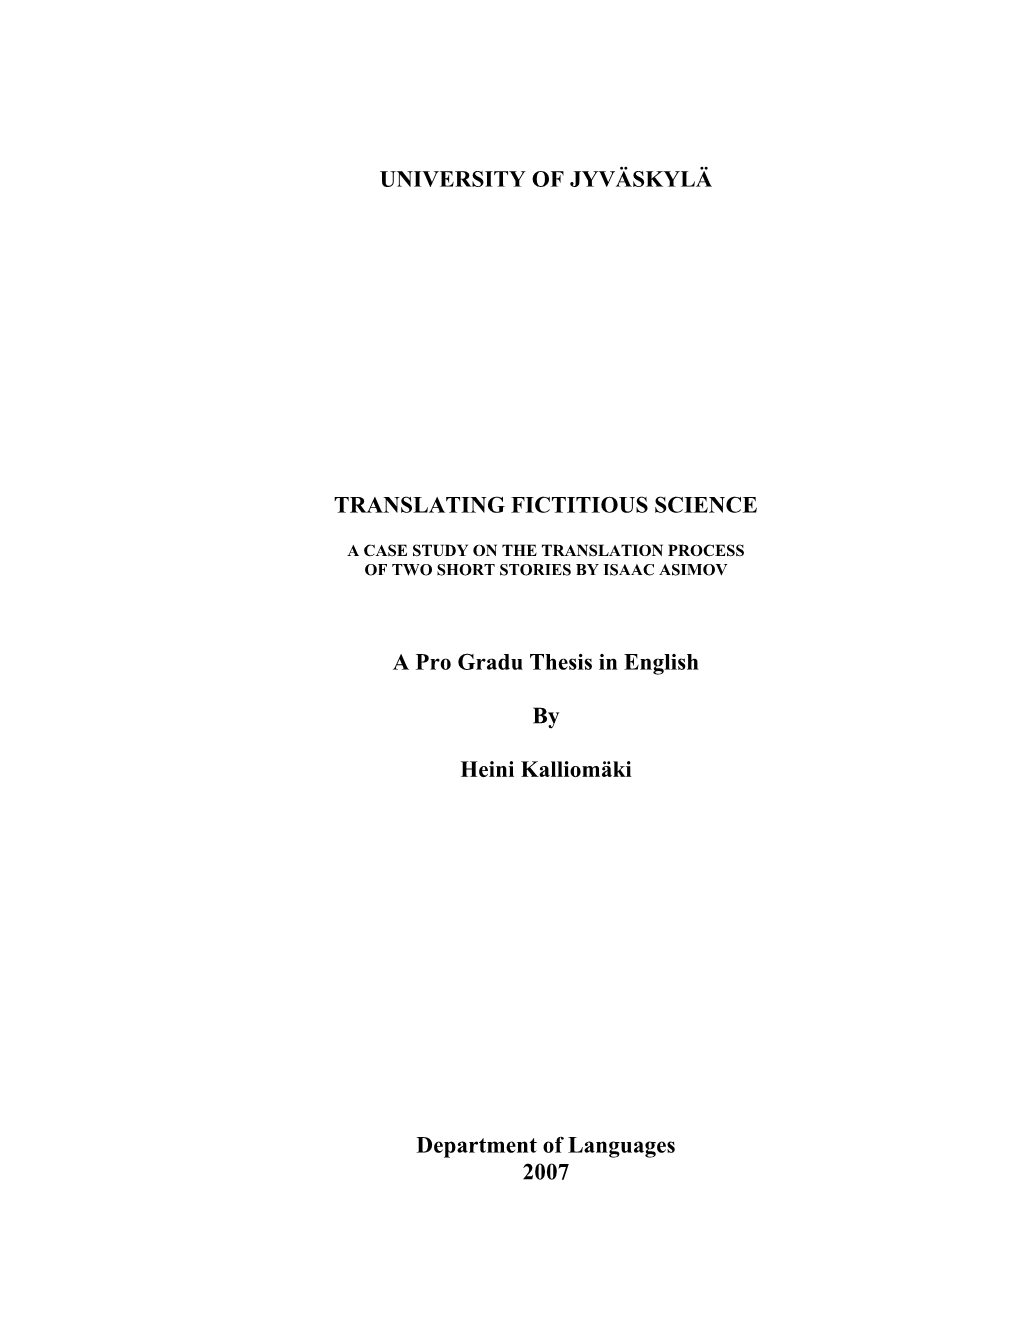 University of Jyväskylä Translating Fictitious